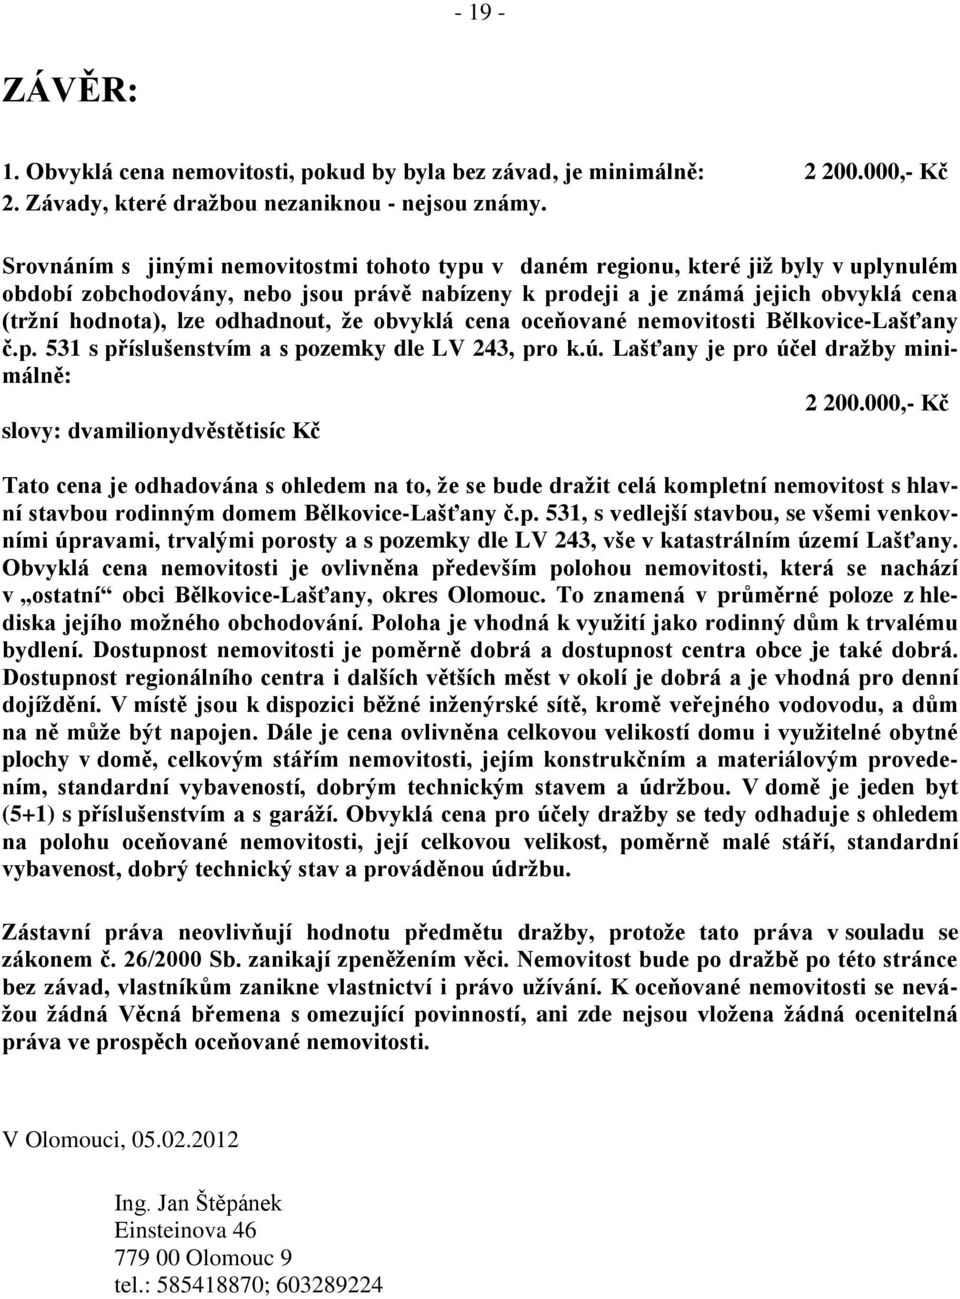 odhadnout, že obvyklá cena oceňované nemovitosti Bělkovice-Lašťany č.p. 531 s příslušenstvím a s pozemky dle LV 243, pro k.ú. Lašťany je pro účel dražby minimálně: 2 200.